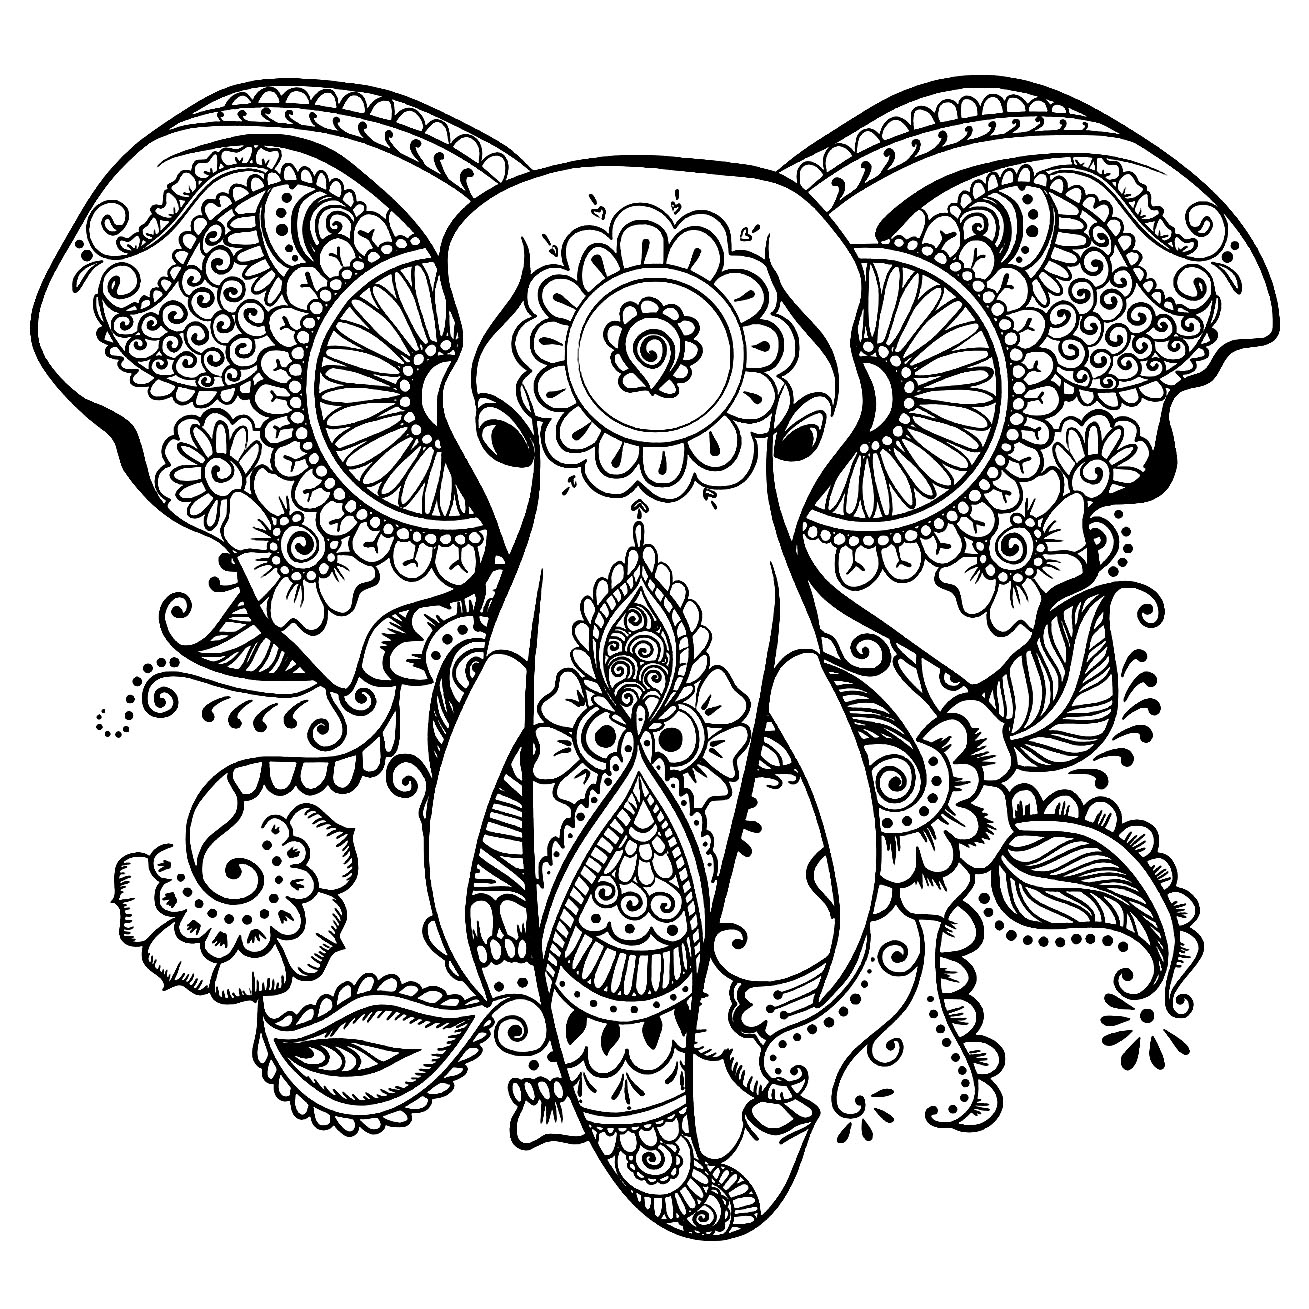 Tranh tô màu chú voi được vẽ họa tiết mandala